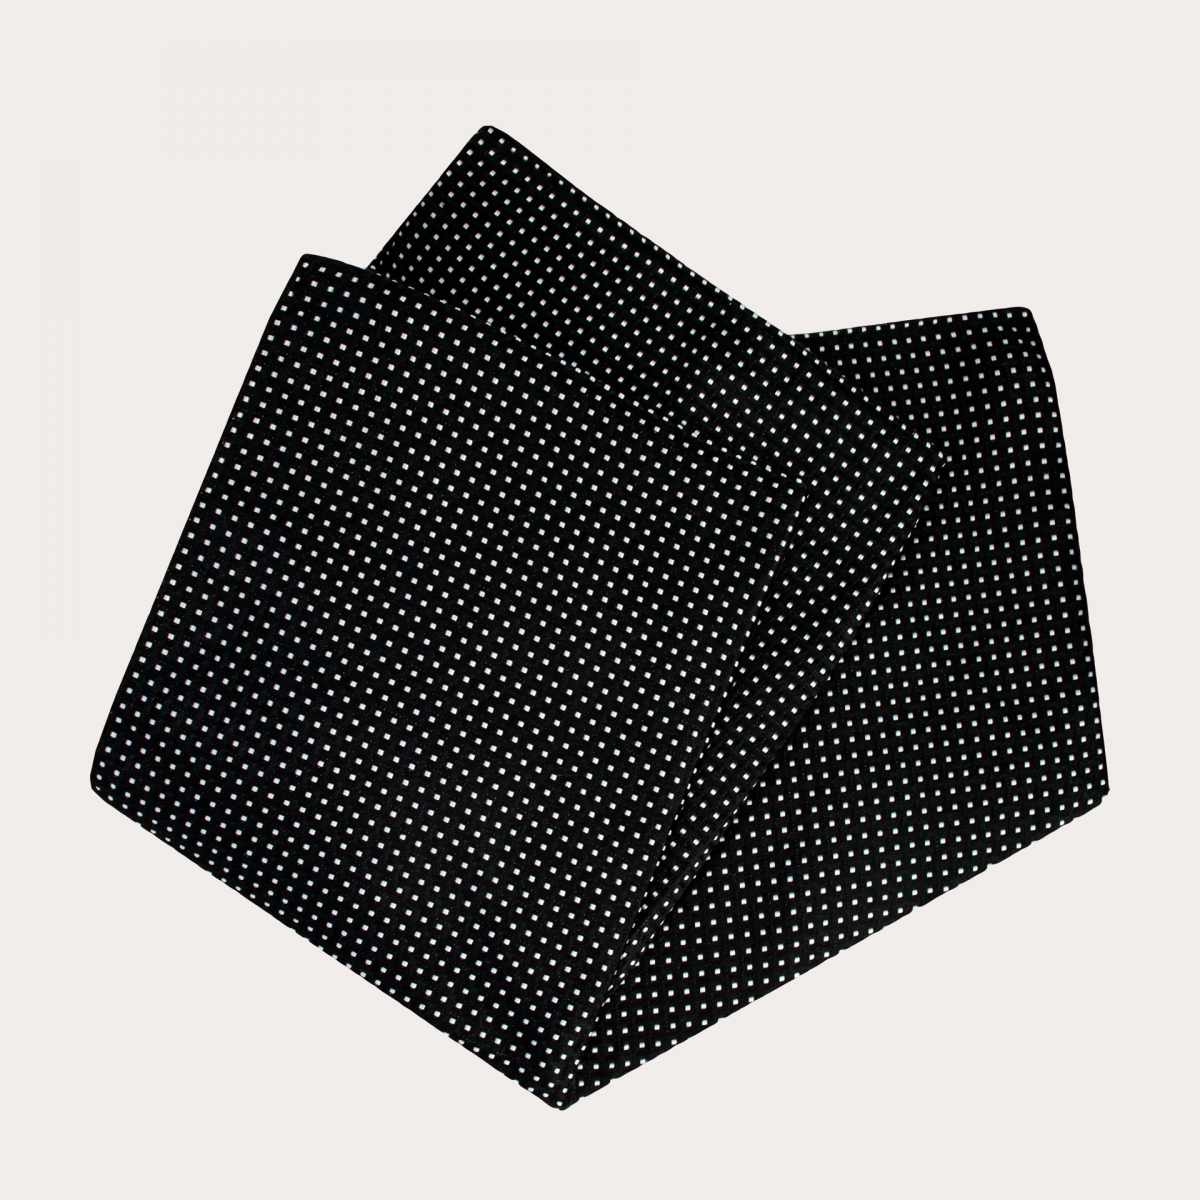 BRUCLE Komplettes Abendset aus eleganter schwarzer Jacquard-Seide mit geometrischem Muster, Hosenträger, Fliege und Einstecktuch